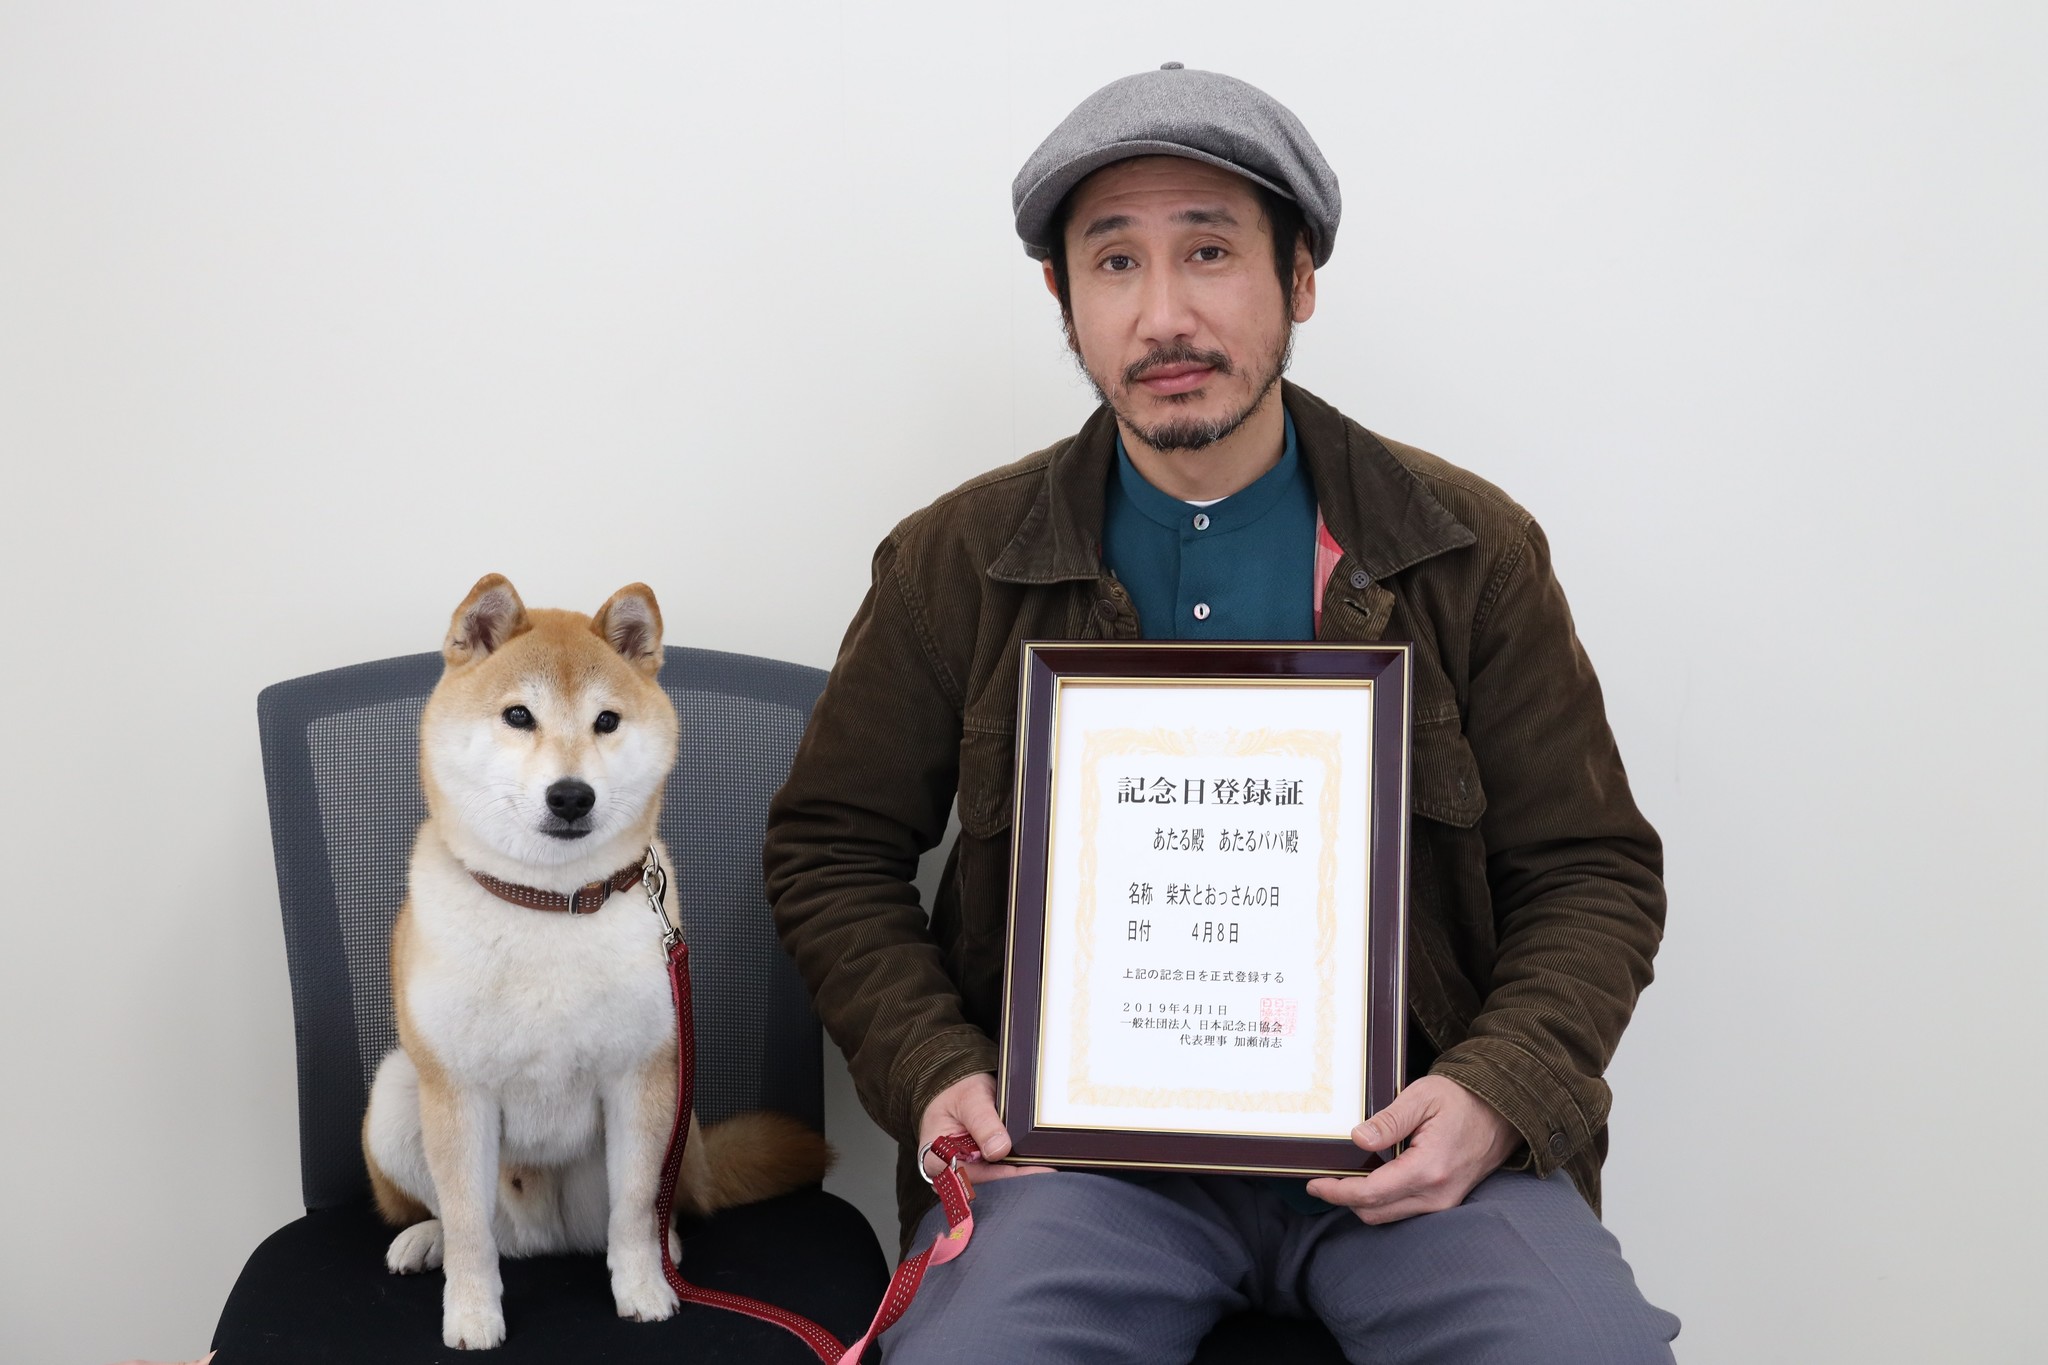 4月8日は 柴犬とおっさんの日 の日に決定 渋川清彦とスター犬が授与 学校法人吉田学園のプレスリリース